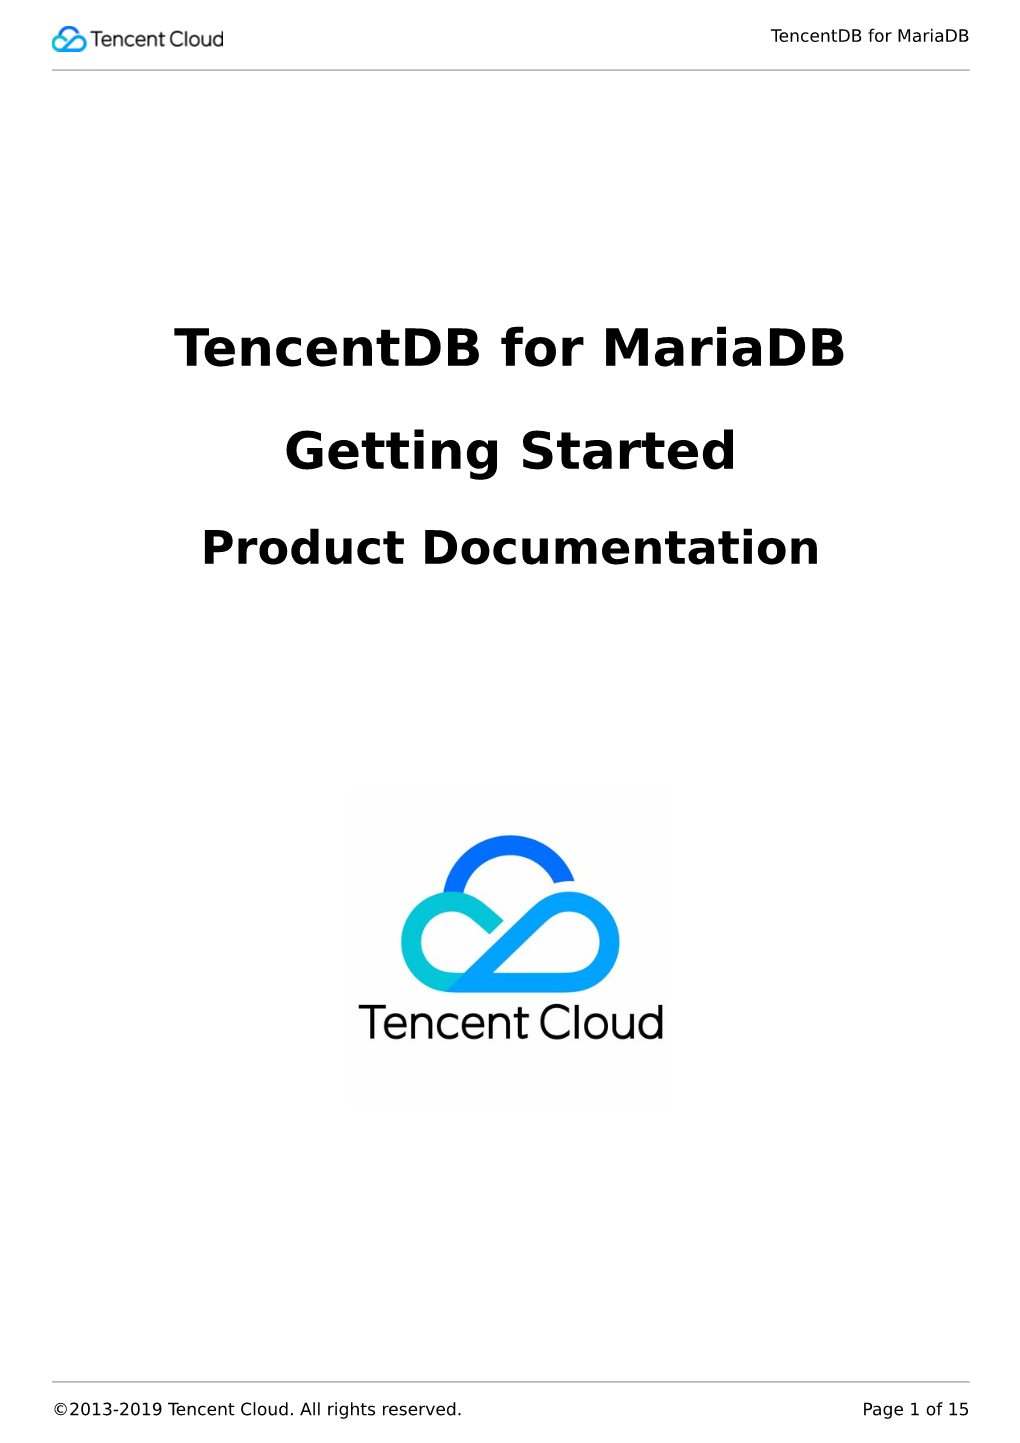 Tencentdb for Mariadb Getting Started